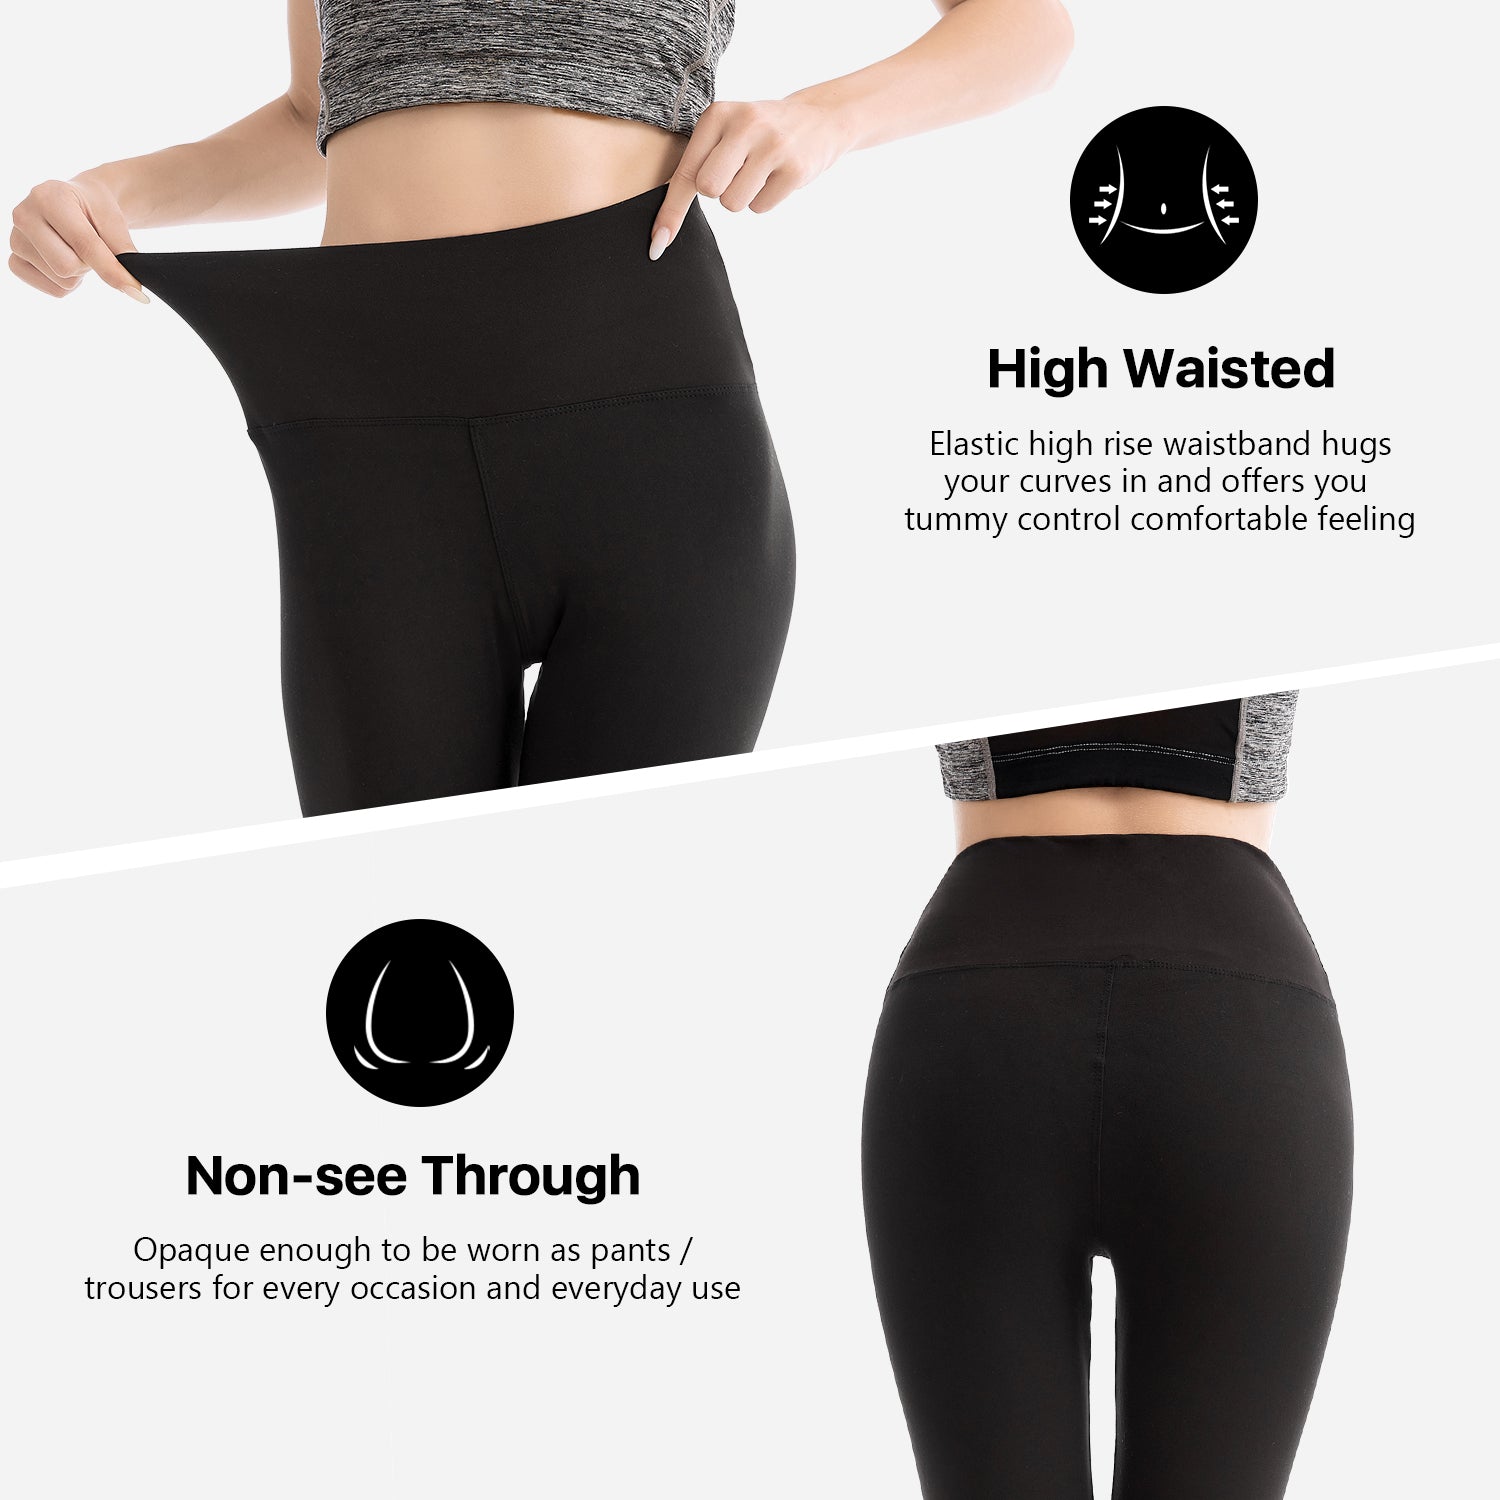 we fleece Women’s Soft Capri Leggings for Women-High Waisted Tummy Control  Non See Through Workout Running Black Leggings Yoga Pants (White